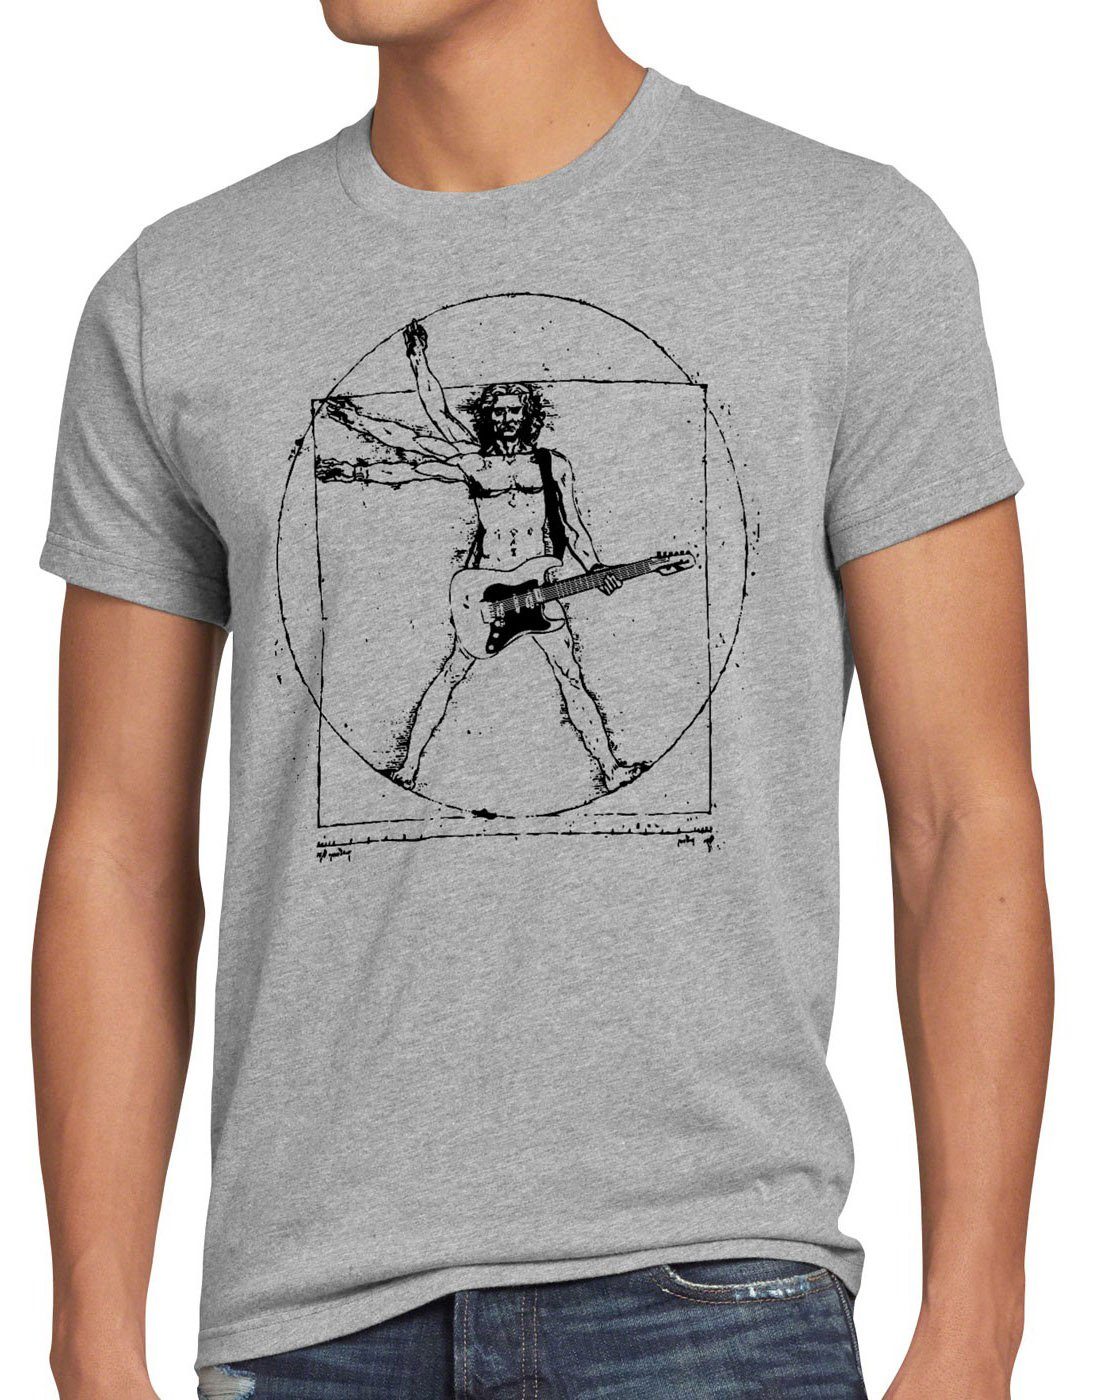 style3 Print-Shirt Herren T-Shirt Da Vinci Rock T-Shirt musik festival gitarre vinyl metal open air wacken mensch grau meliert